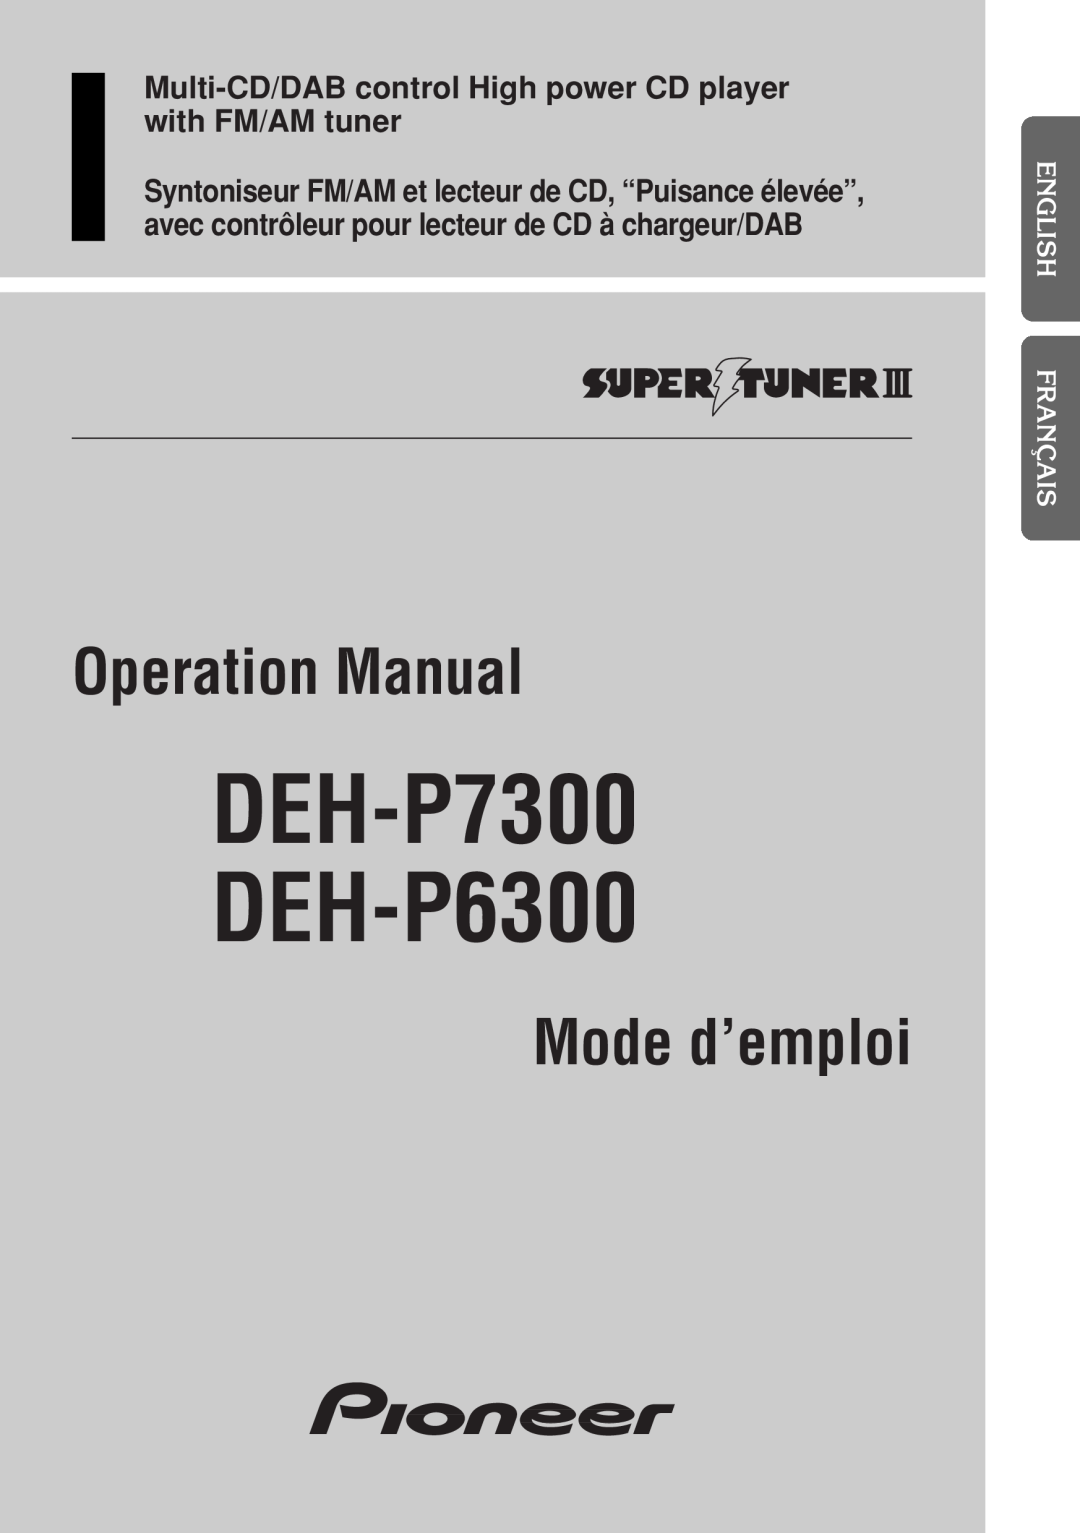 Pioneer operation manual English Français Deutsch Français Italiano Nederlands, DEH-P7300 DEH-P6300, Operation Manual 